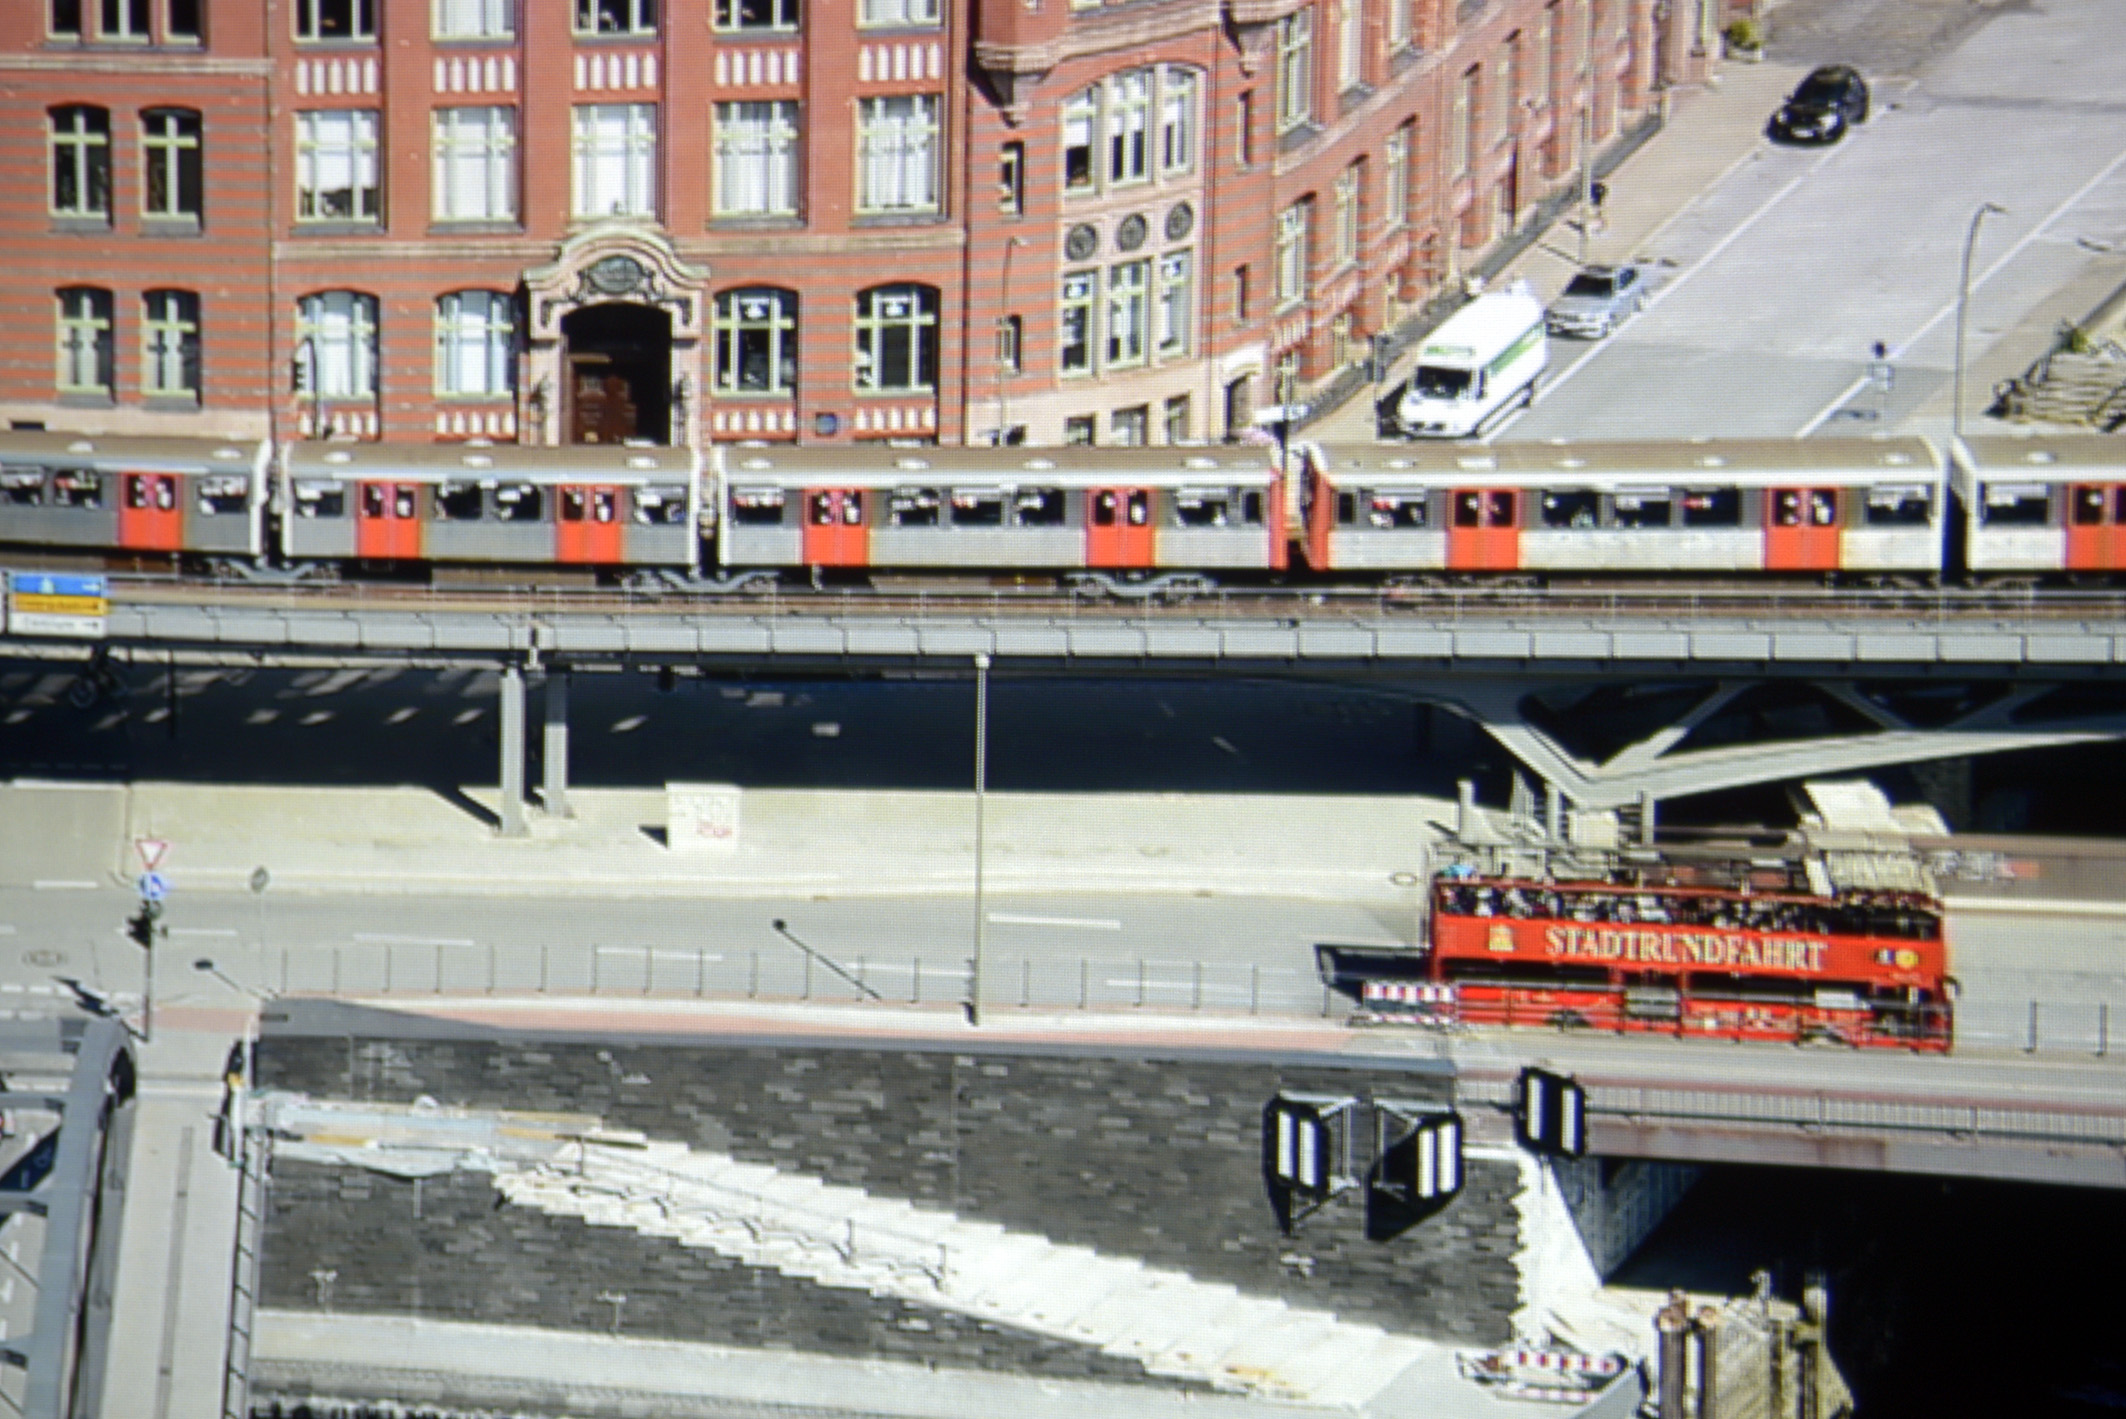 Foto: Michael B. Rehders Full-HD: Die Panoramaaufnahme von Hamburg habe ich aus der 21. Etage des Hanseatic Trade Centers geschossen. Der Ausschnitt aus dem projizierten Full-HD-Bildes zeigt eine ordentliche Farbdarstellung. Der Schriftzug „STADTRUNDFAHRT“ ist gut zu lesen. Der Asphalt erscheint angenehm farbneutral.